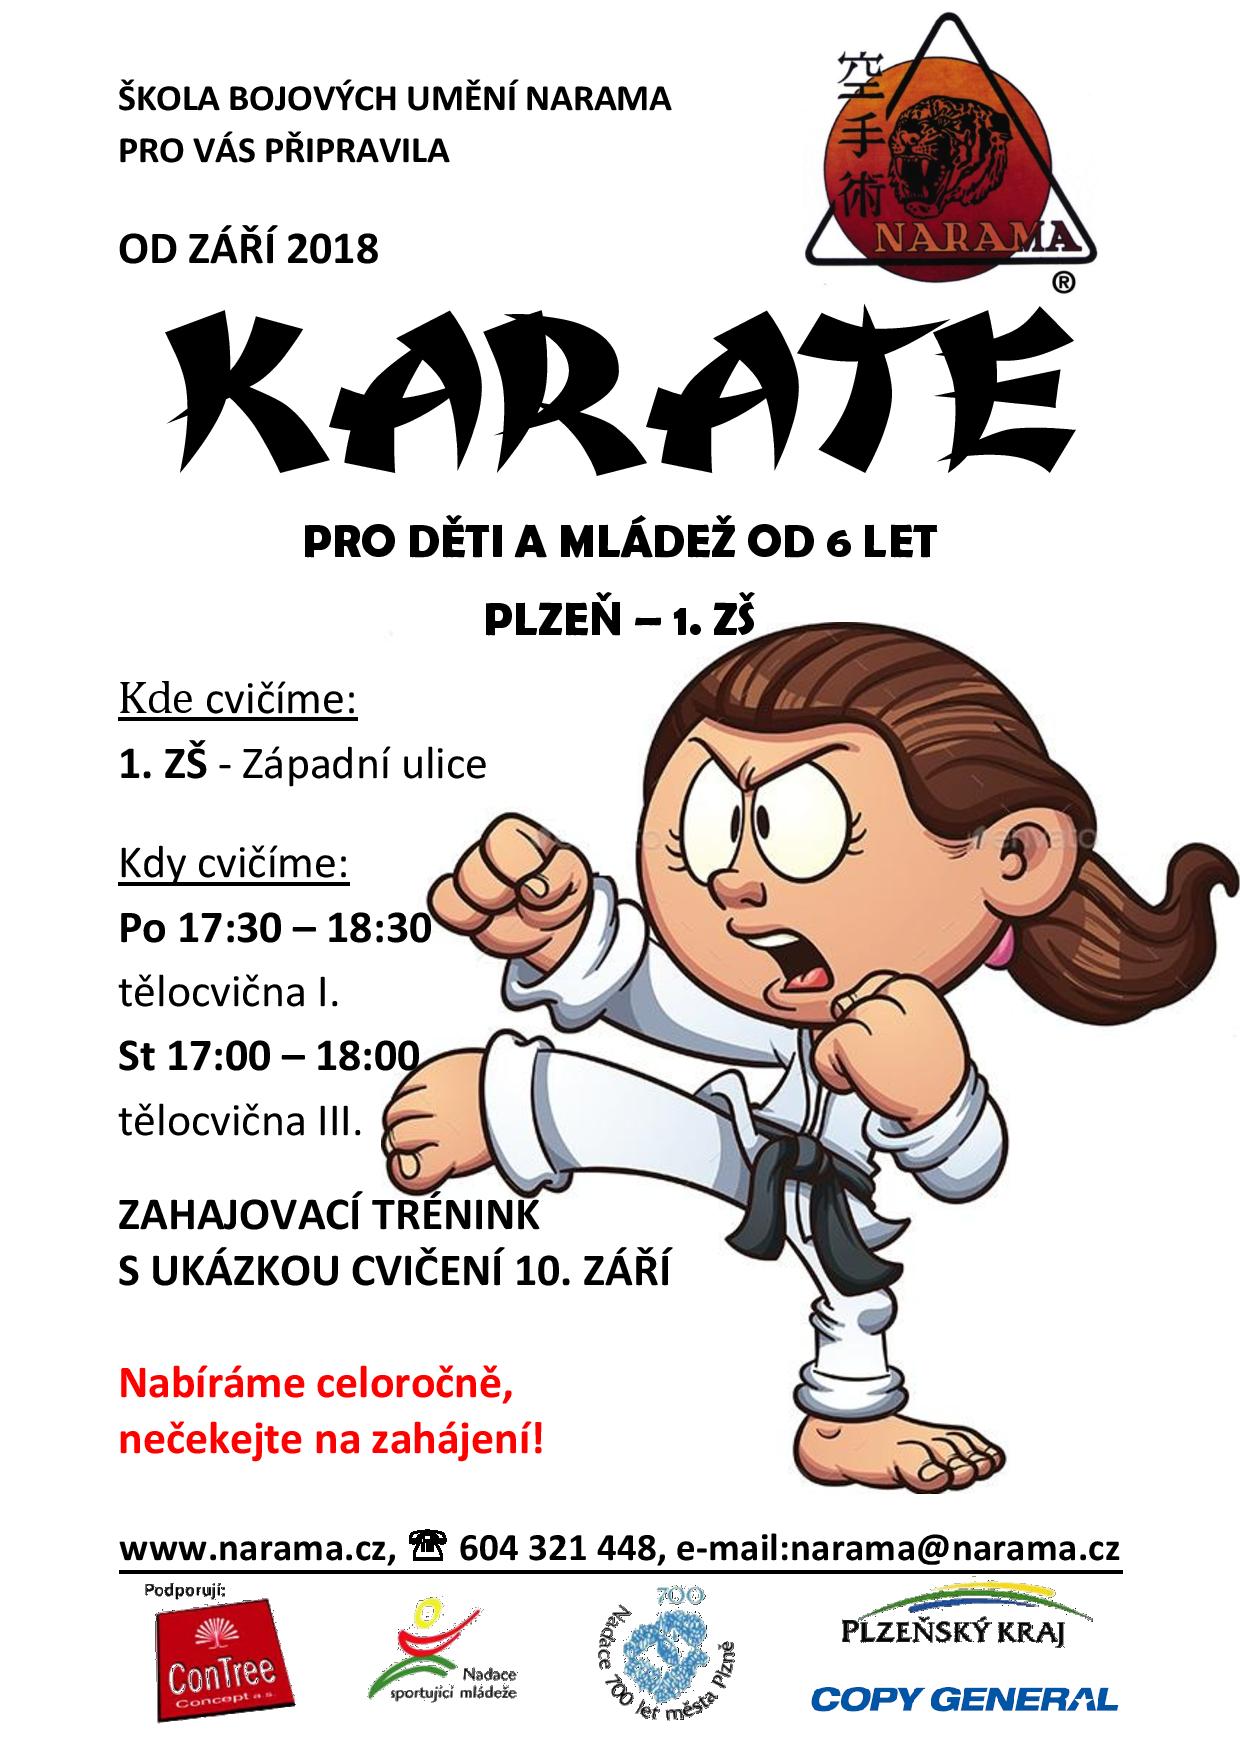 NARAMA - karate pro děti a mládež od 6 let